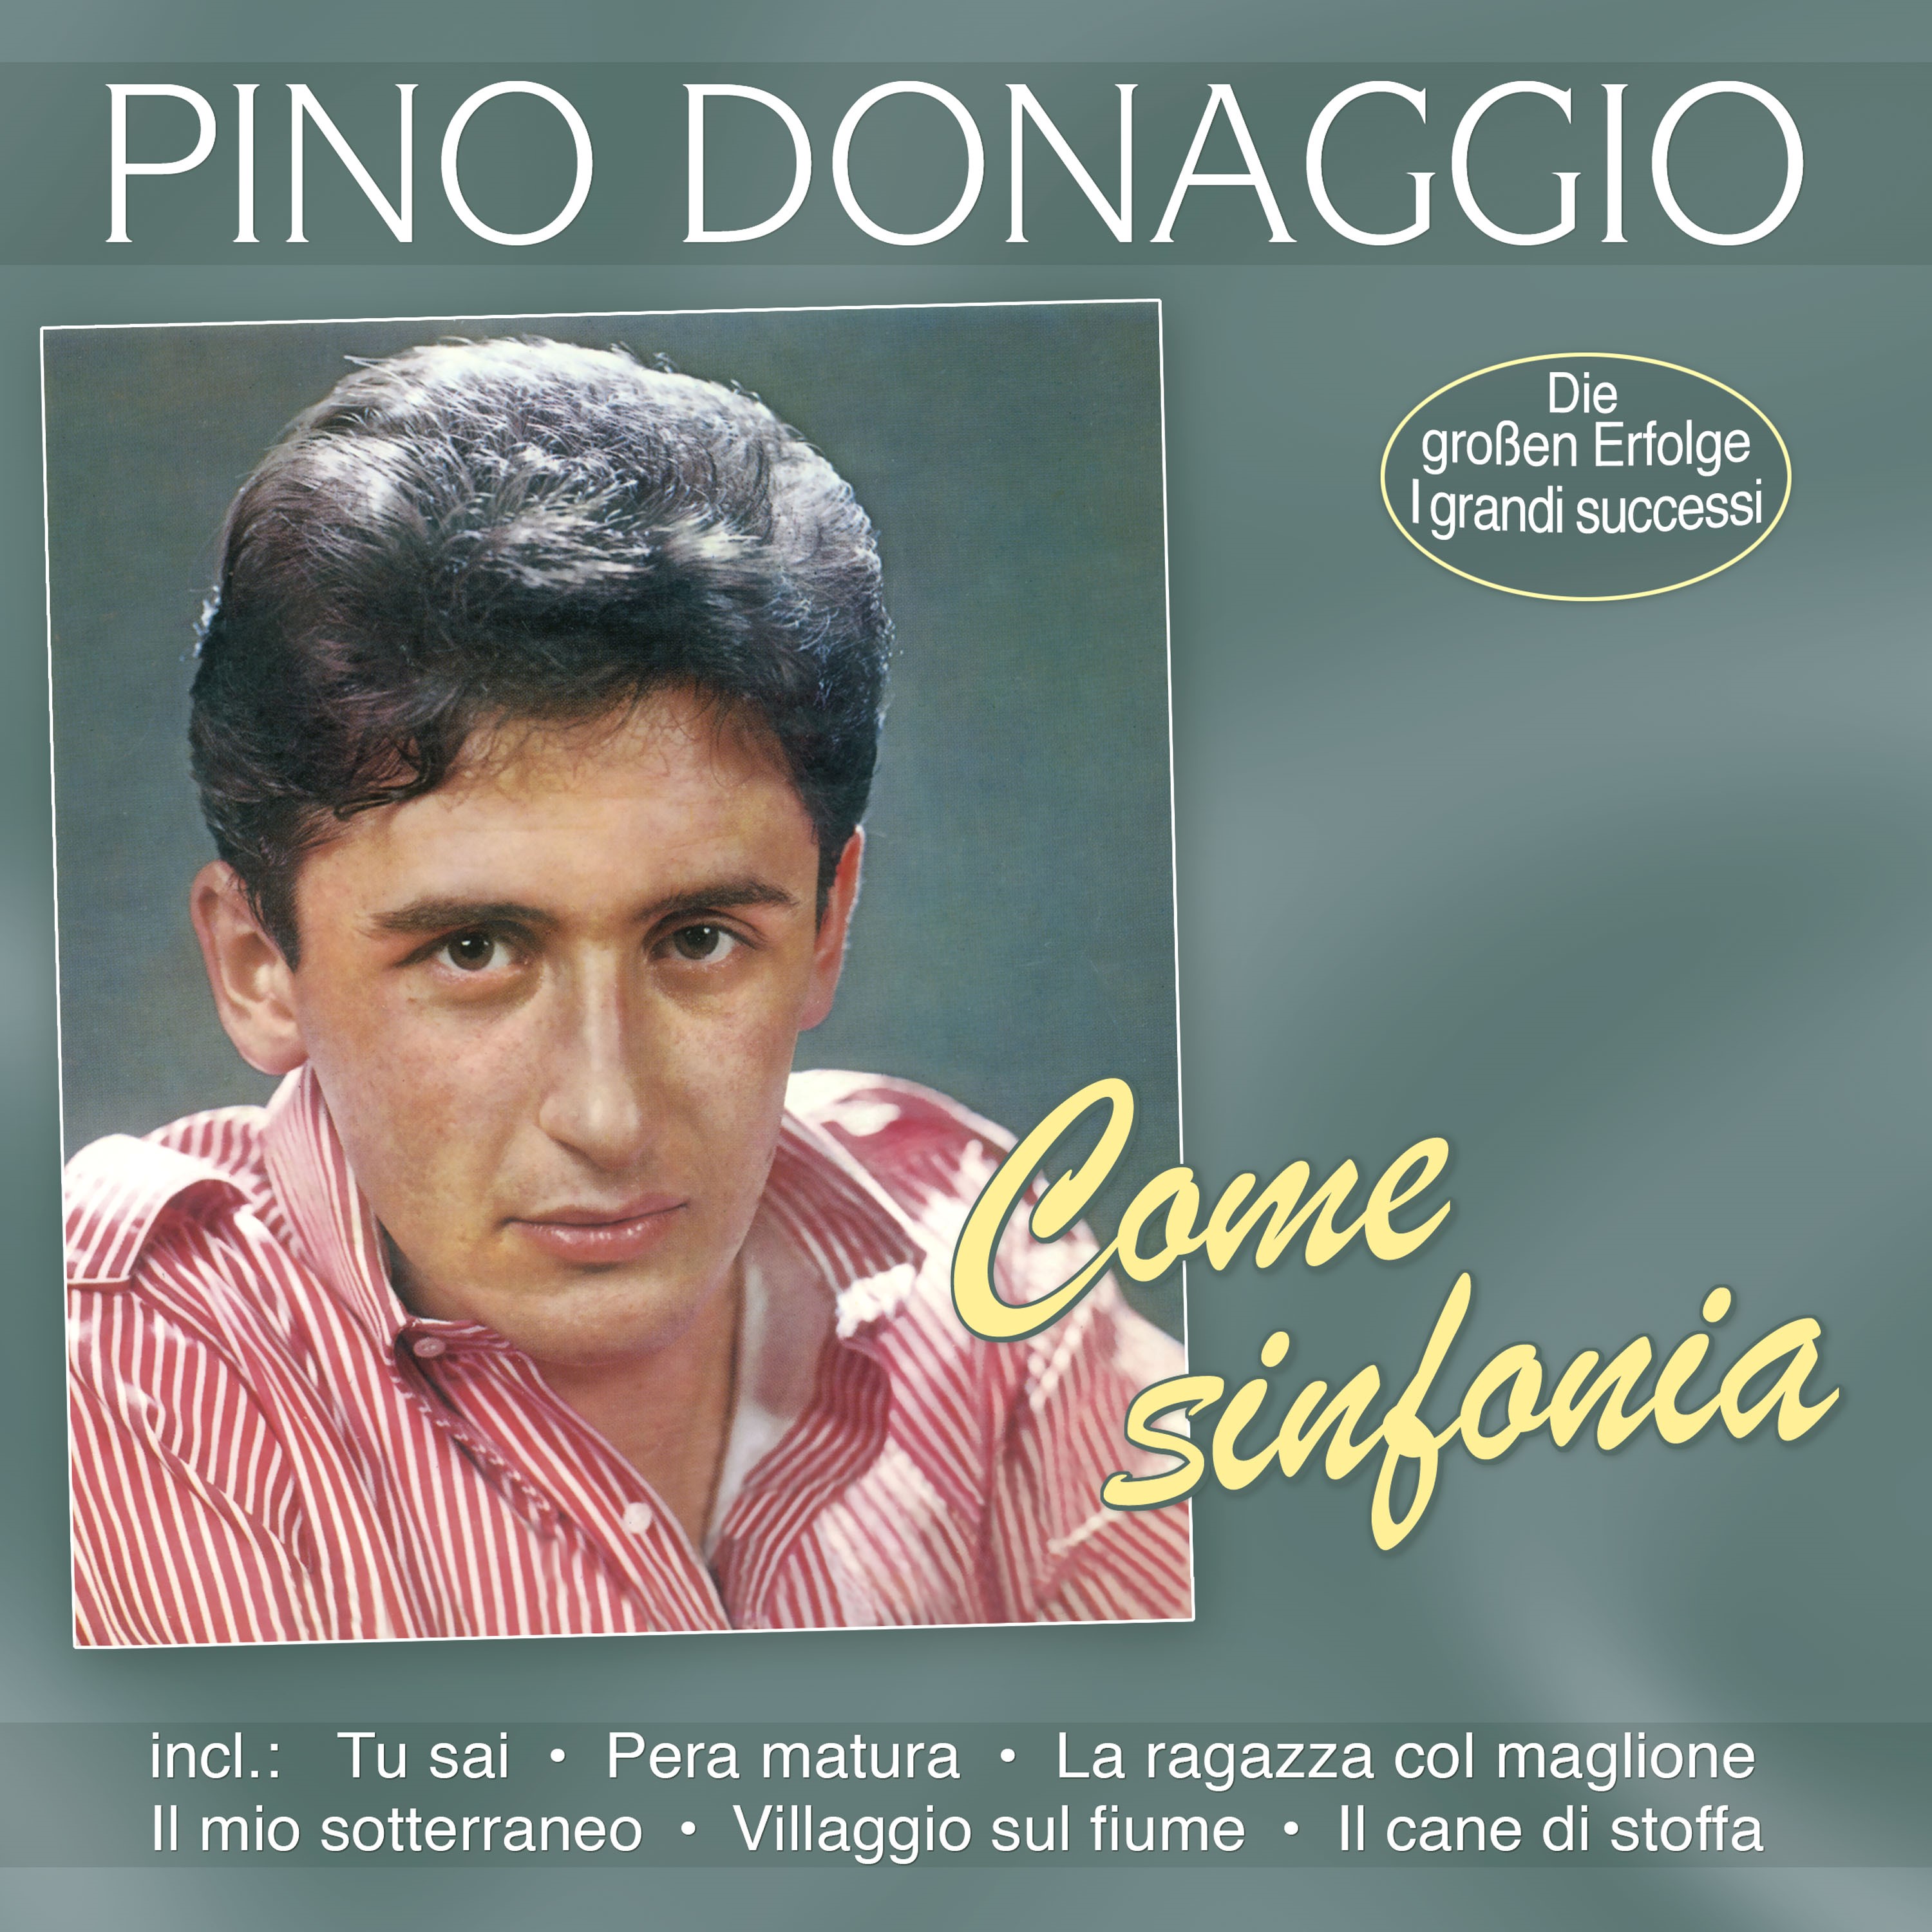 Donaggio, Pino - Come Sinfonia - Die großen Erfolge - I grandi Successi